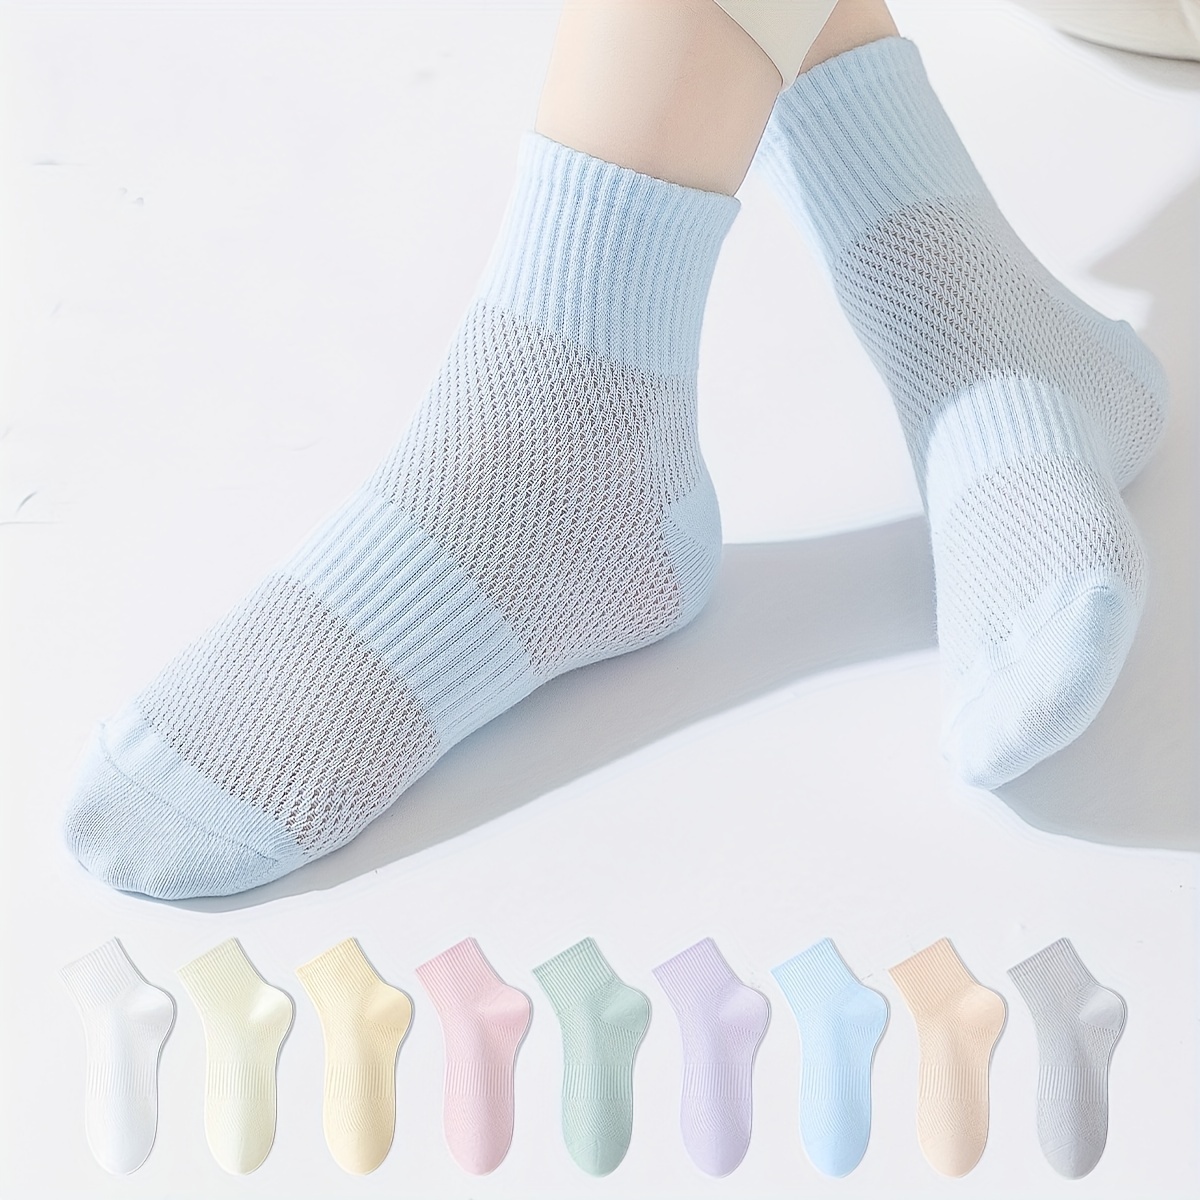 

5 Pairs Solid Pastel Socks, Simple & Breathable Short Socks, Women's Stockings & Hosiery